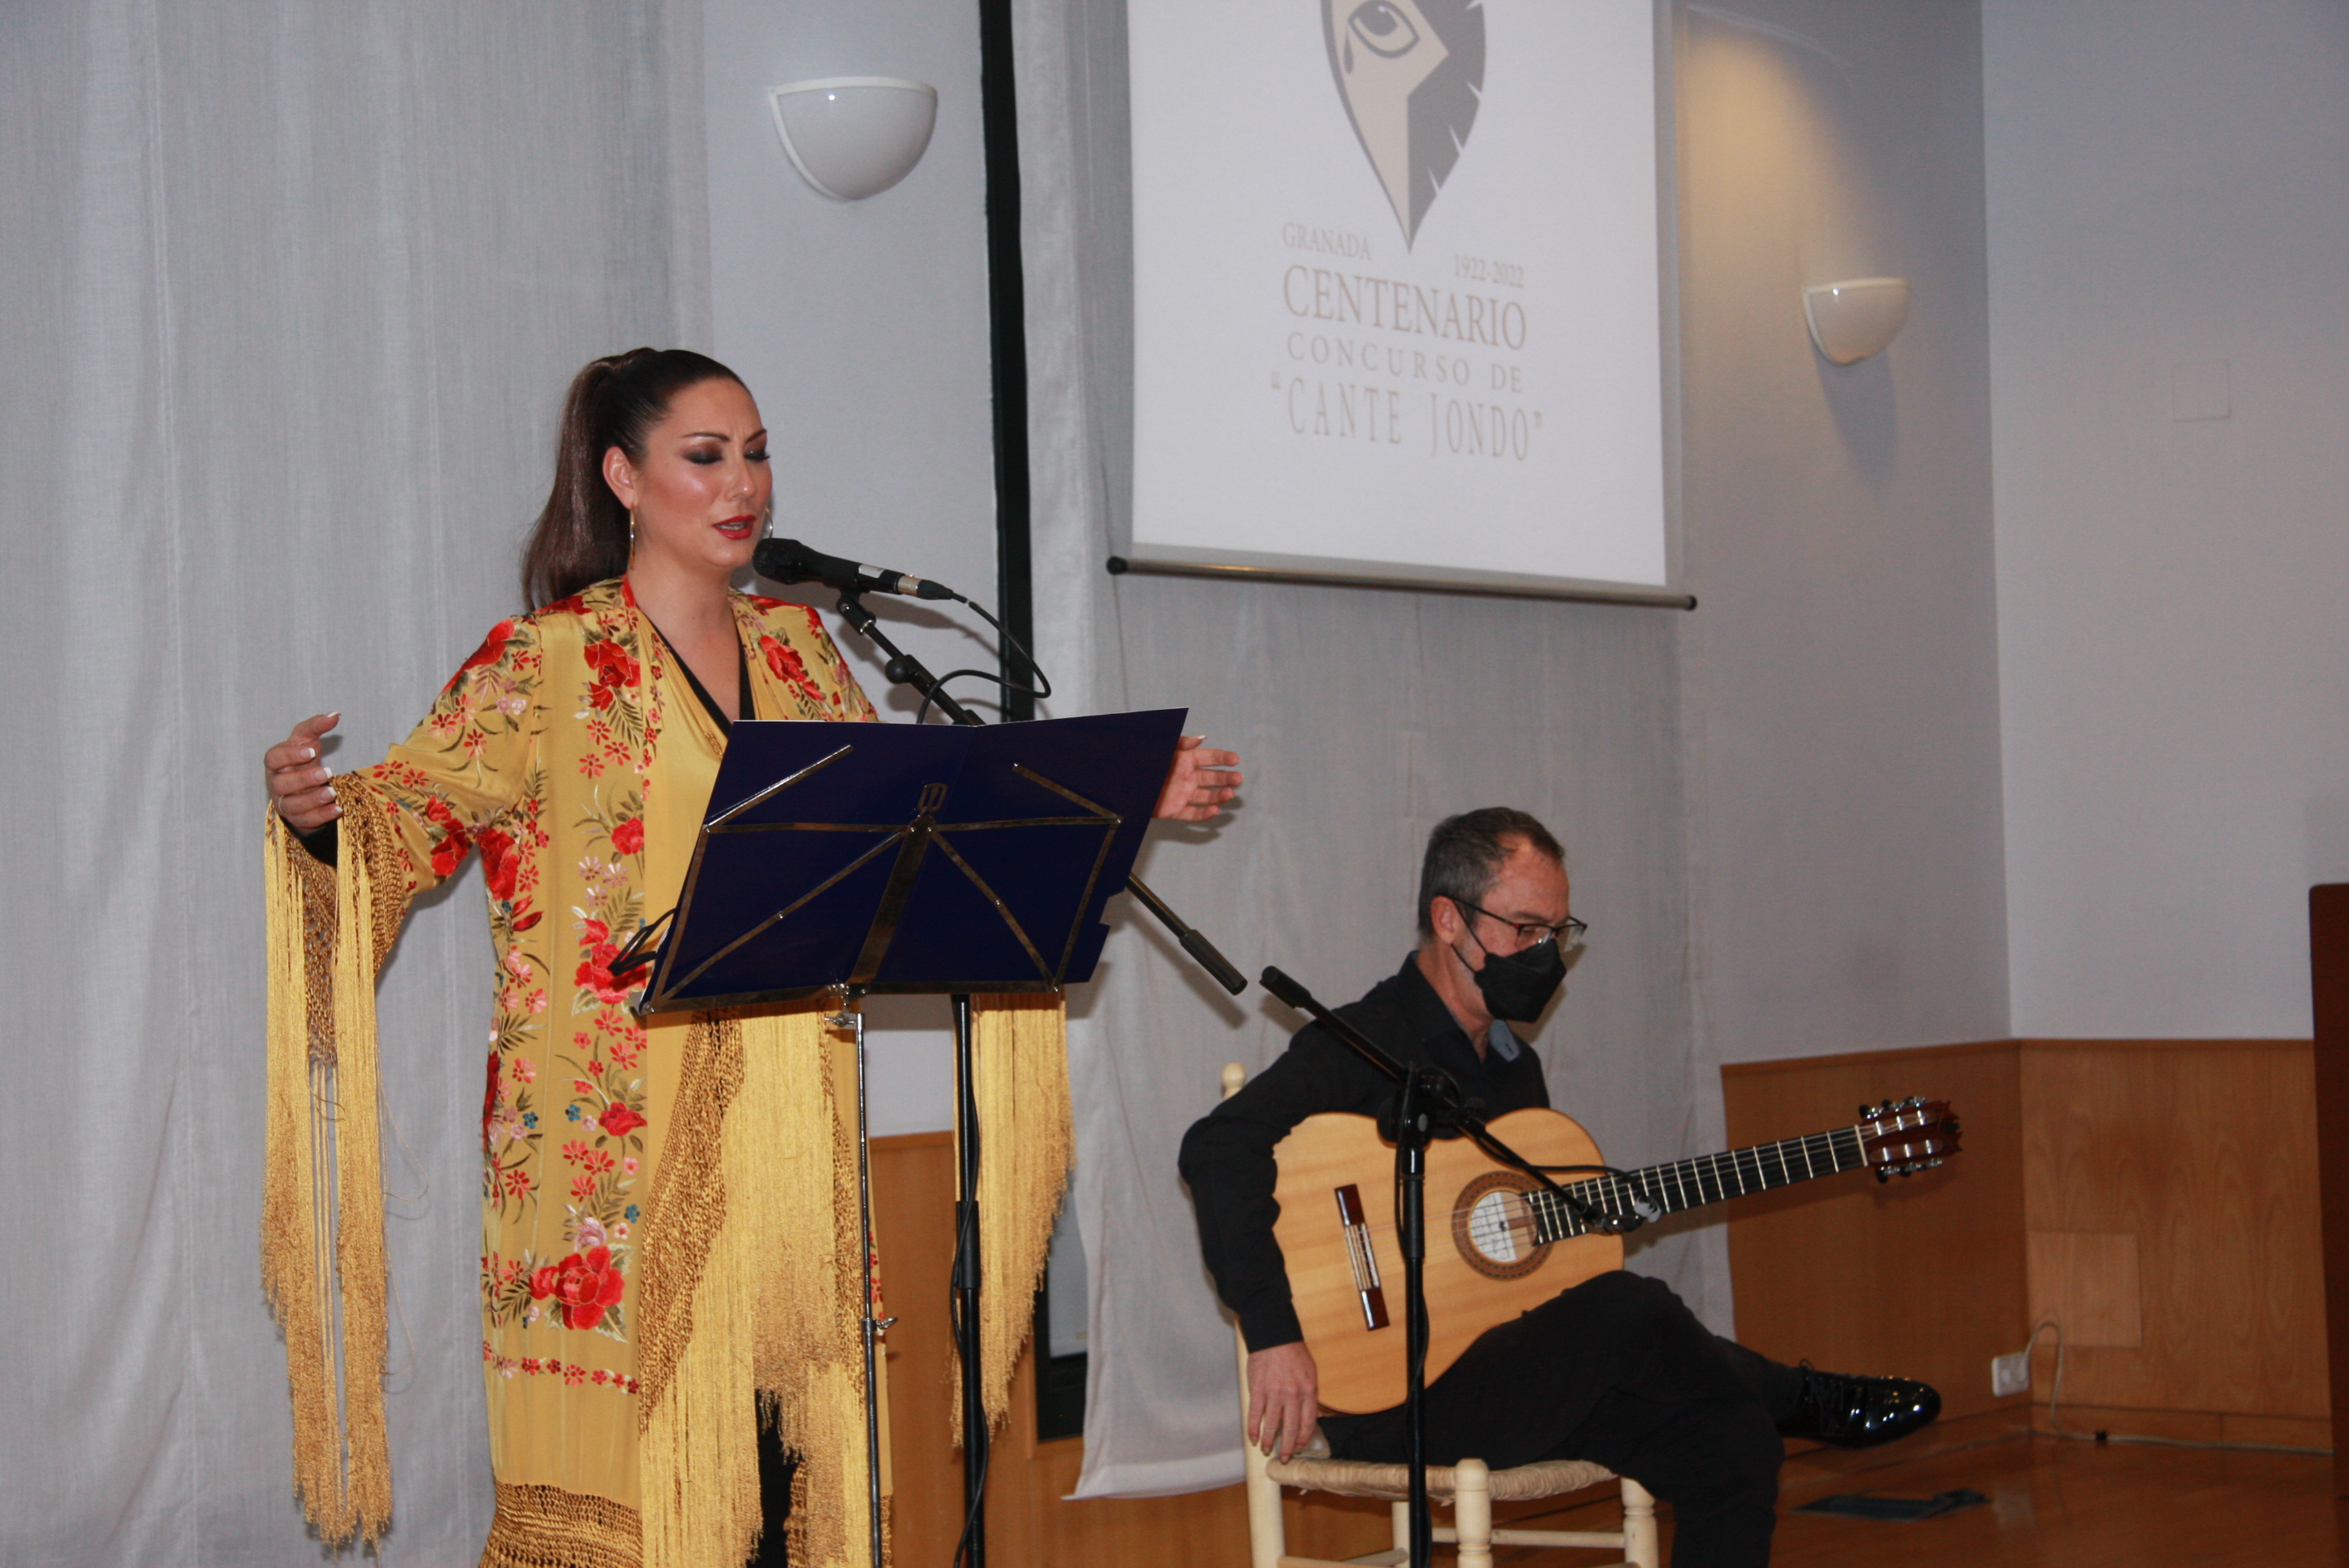 Diputación organiza exposiciones, talleres y actuaciones para conmemorar el Centenario del Concurso de Cante Jondo